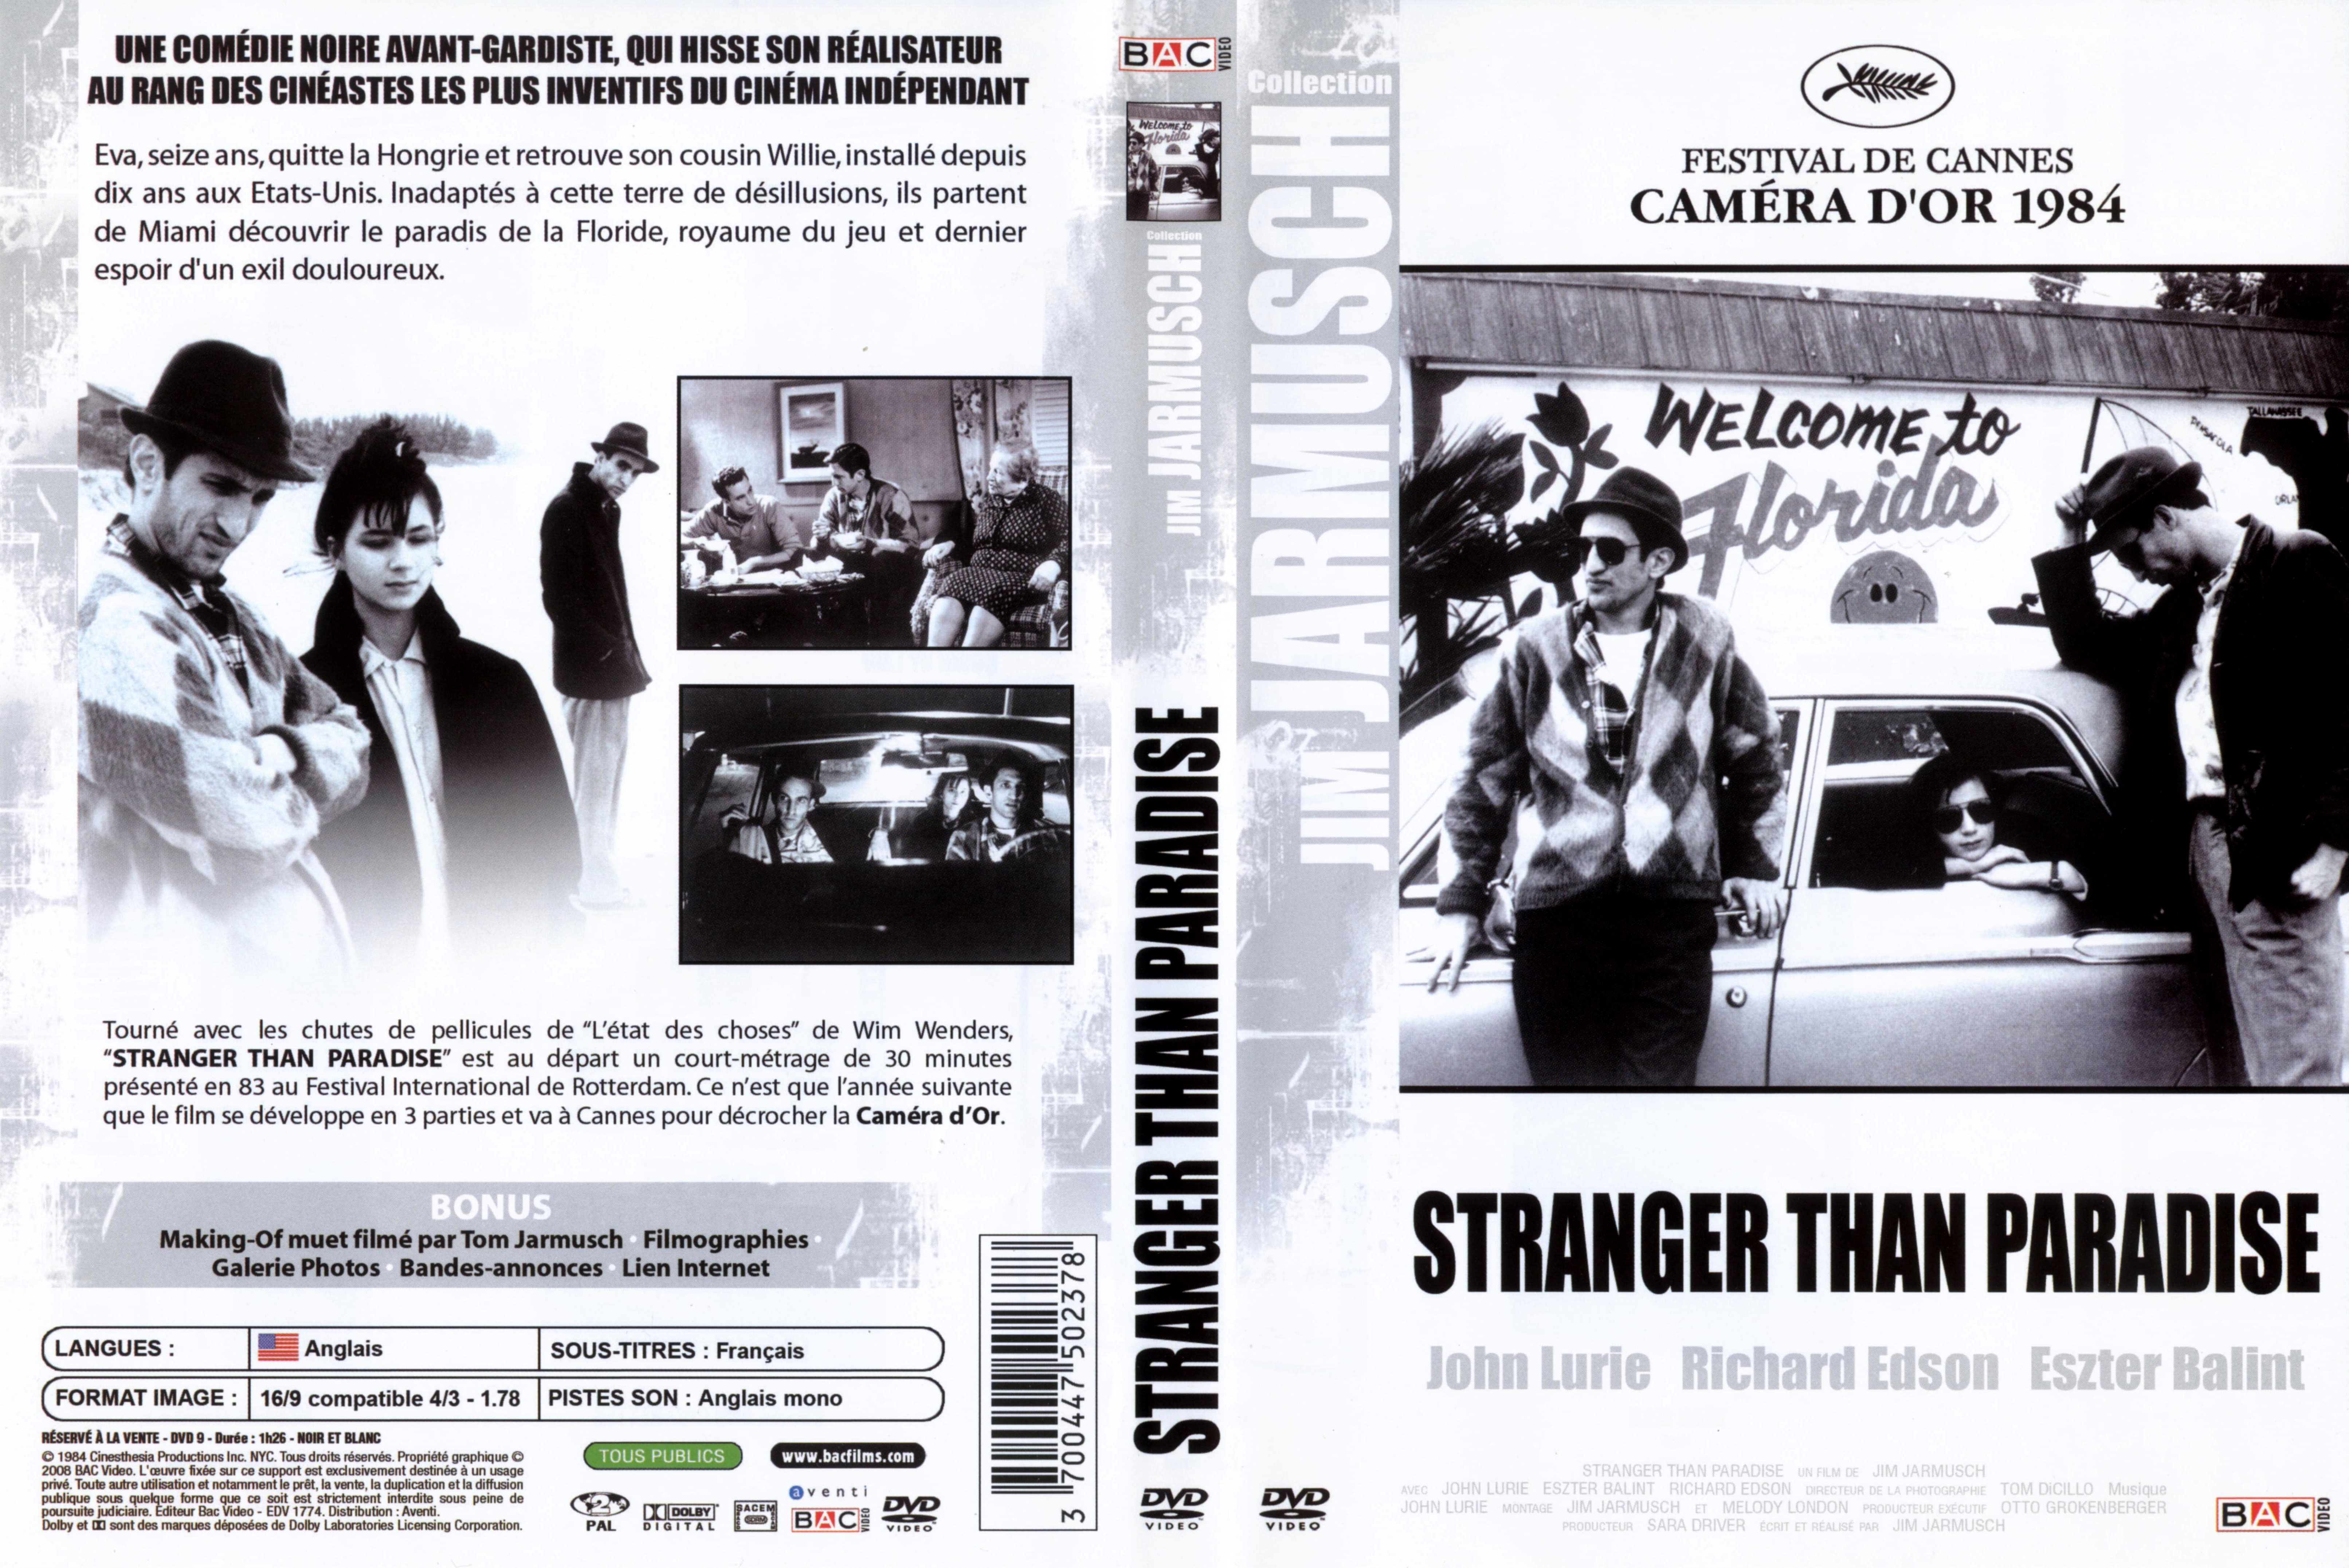 Jaquette DVD Stranger than paradise v3